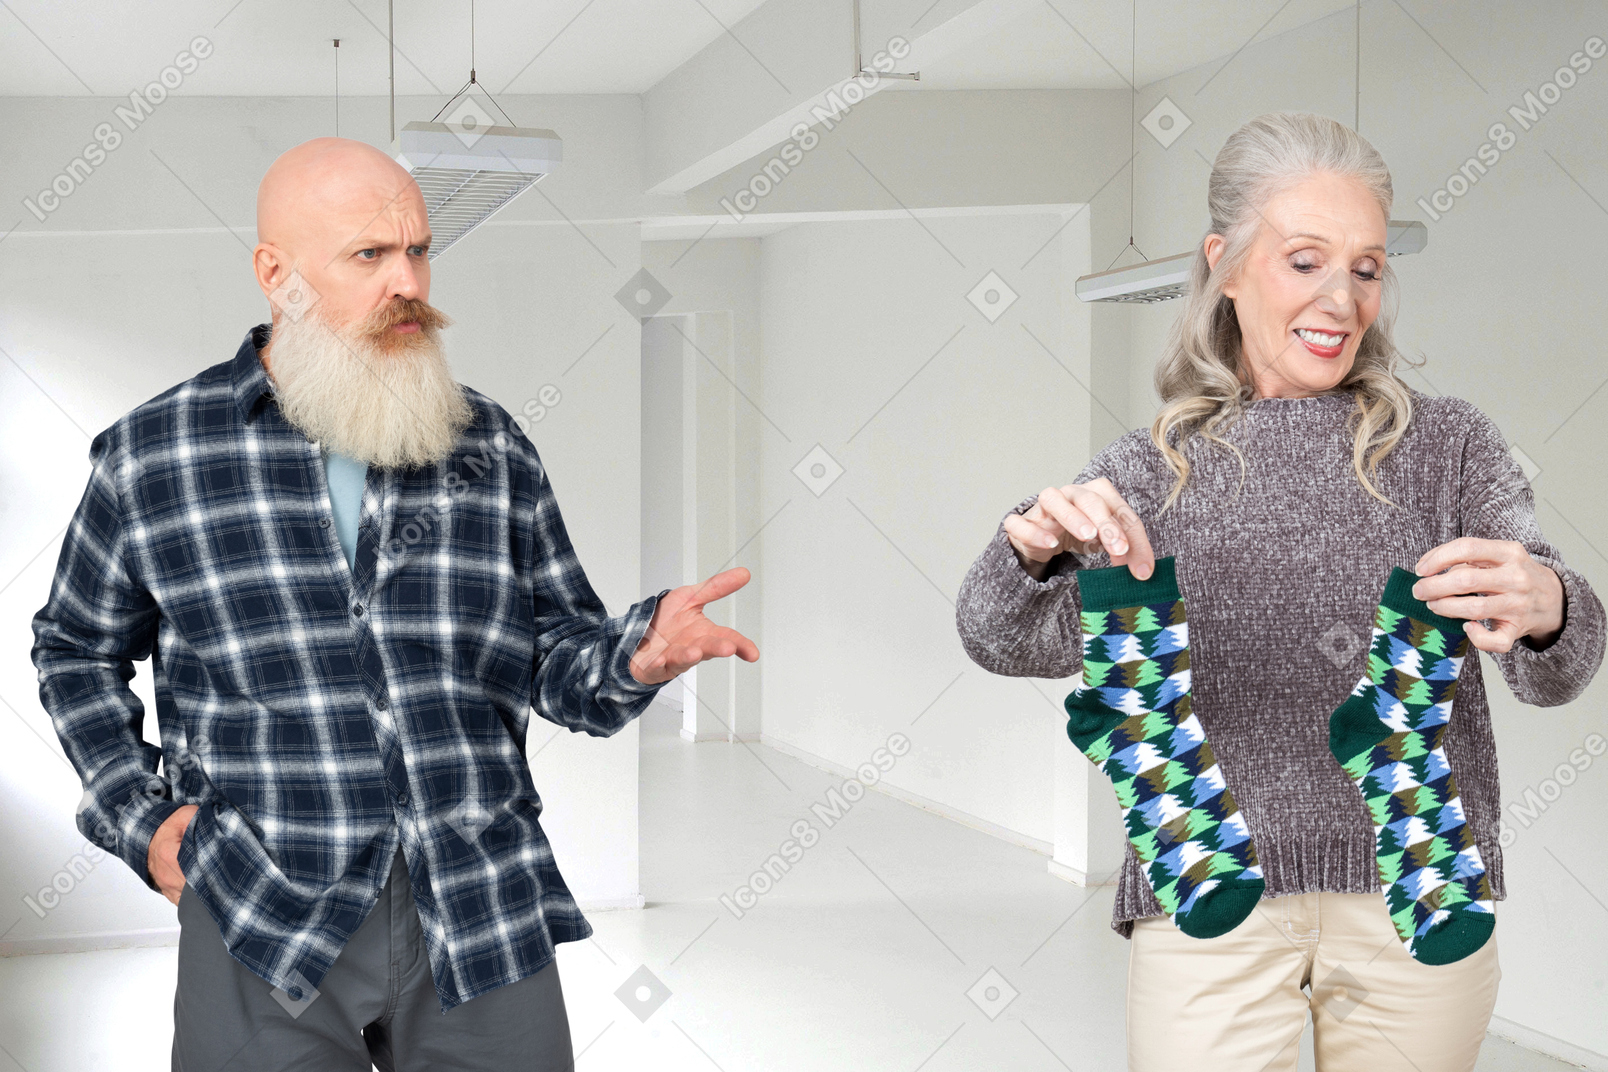 Um velho careca com uma barba grisalha olhando para uma velha senhora espantada enquanto ela está segurando um par de meias verdes em suas mãos